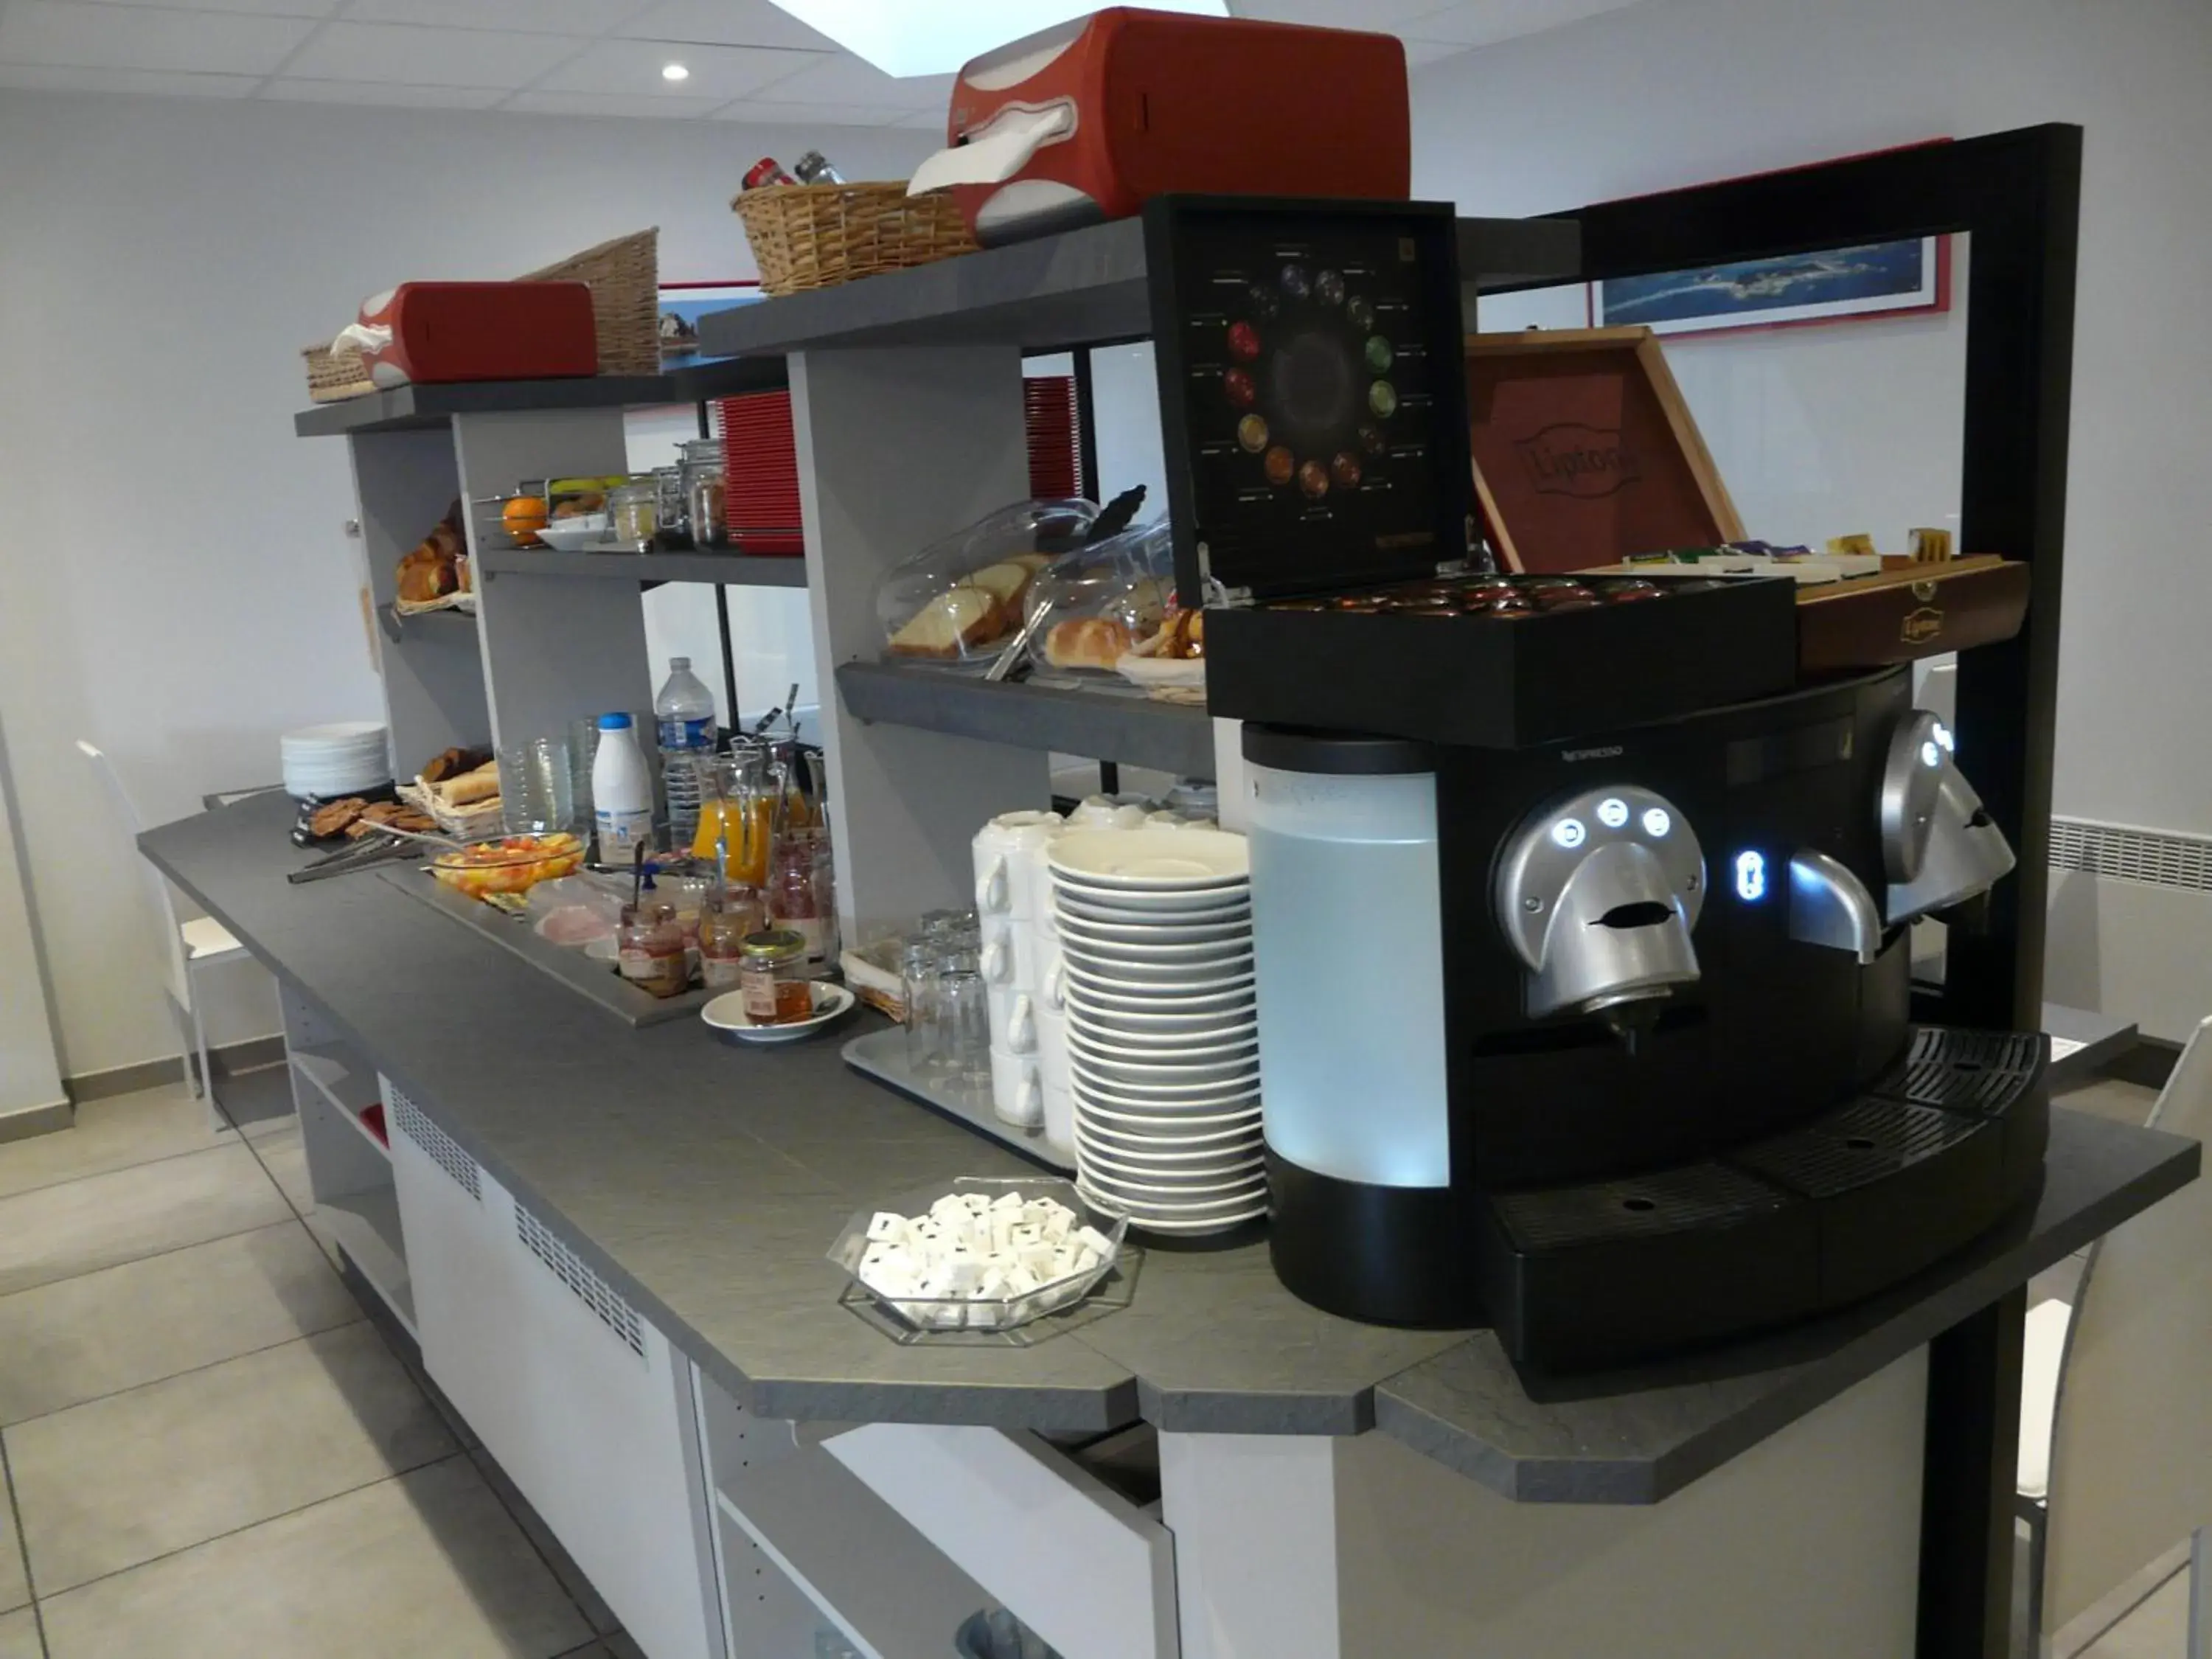 Buffet breakfast in Hôtel de la baie de Paimpol